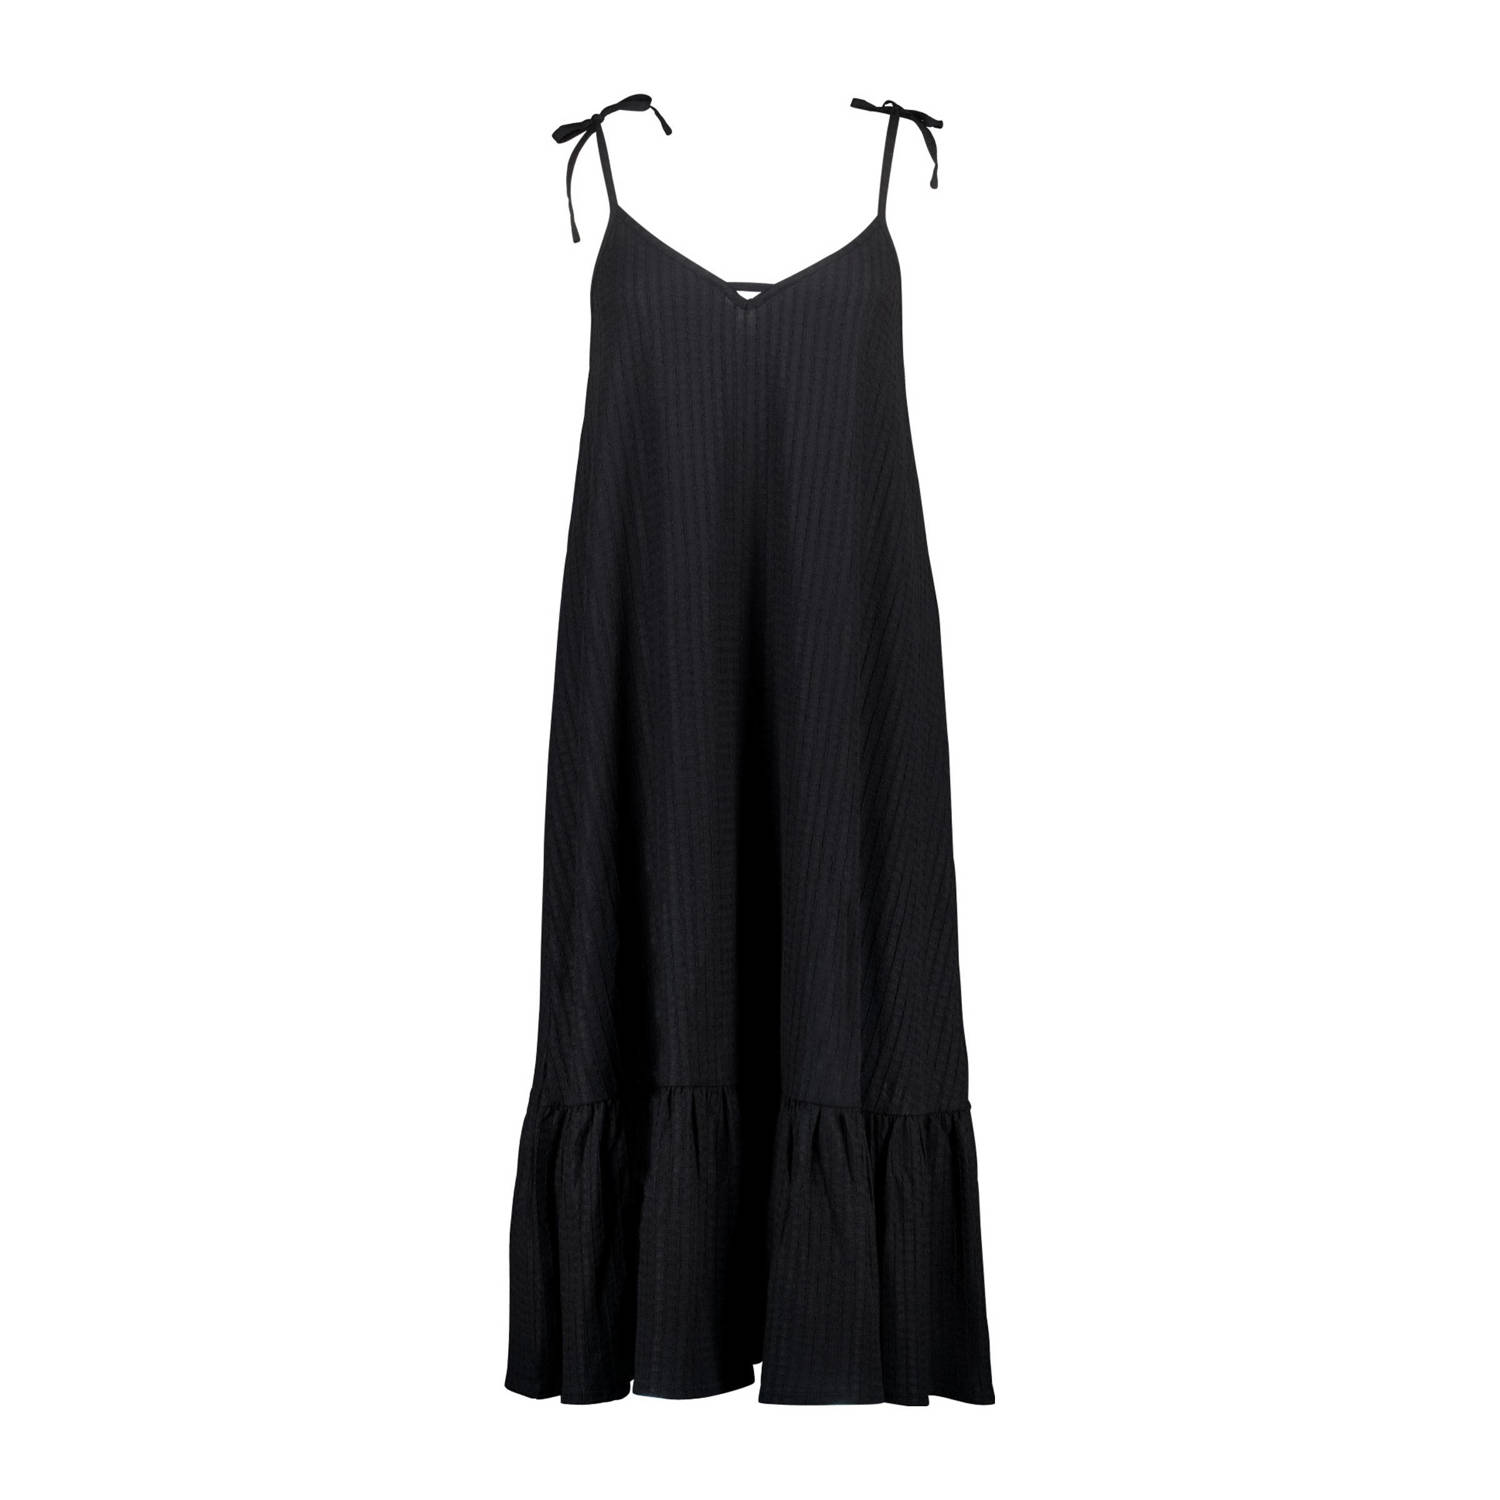 MS Mode ribgebreide A-lijn jurk zwart